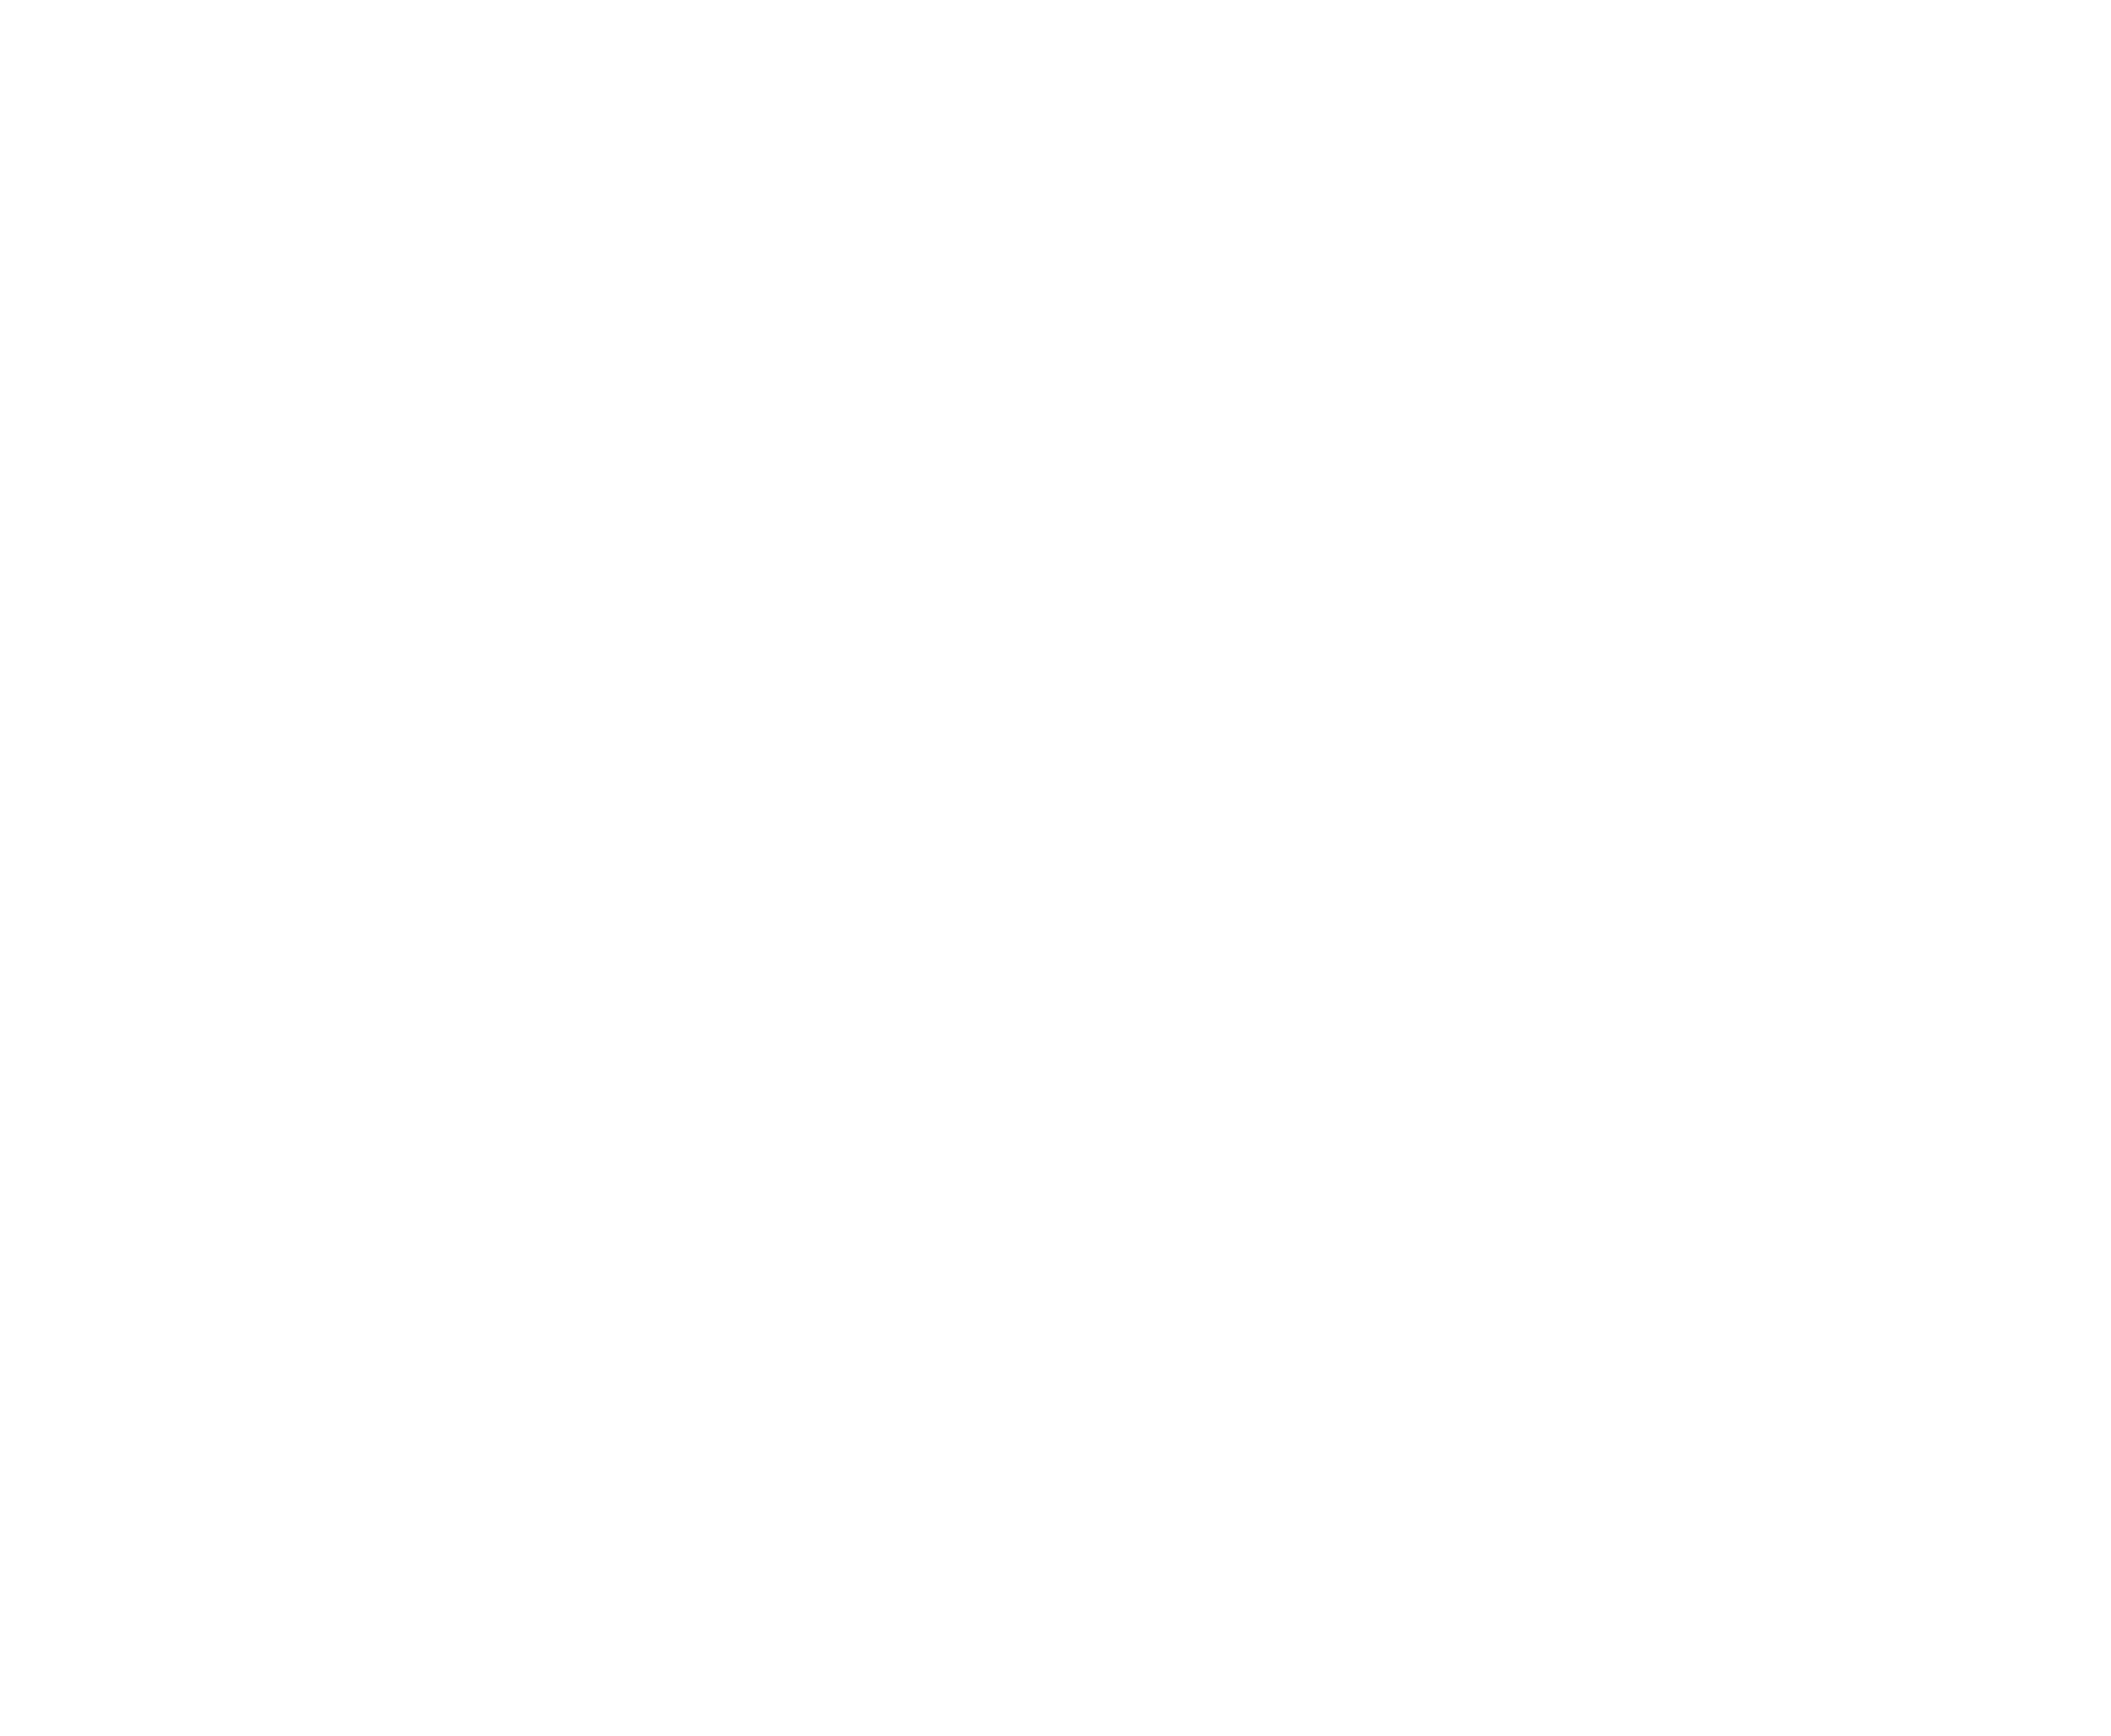 hida meat japan beef